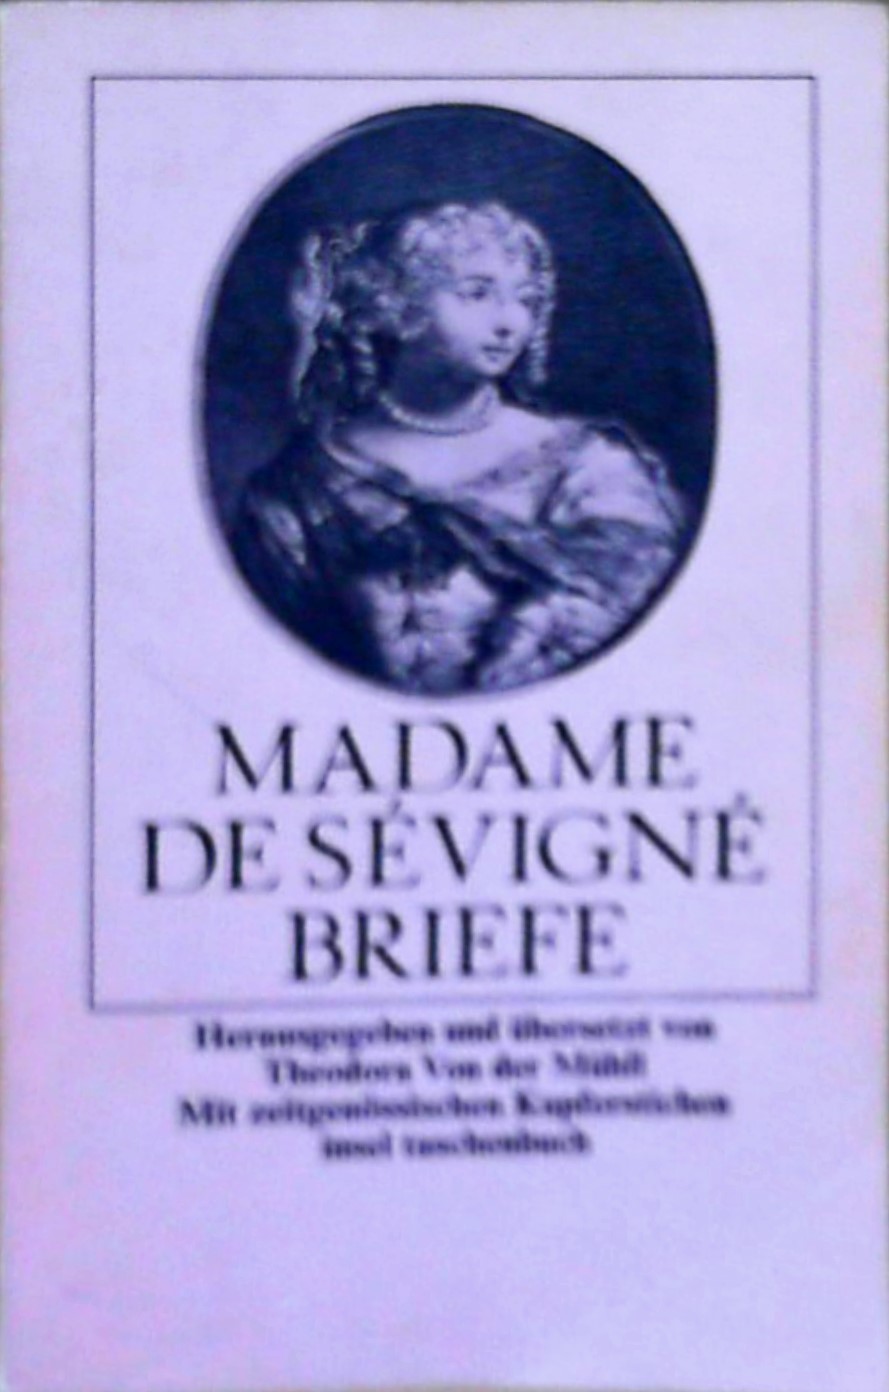 Briefe - Sévigné, Madame de, Theodora von der Mühll und Theodora von der Mühll